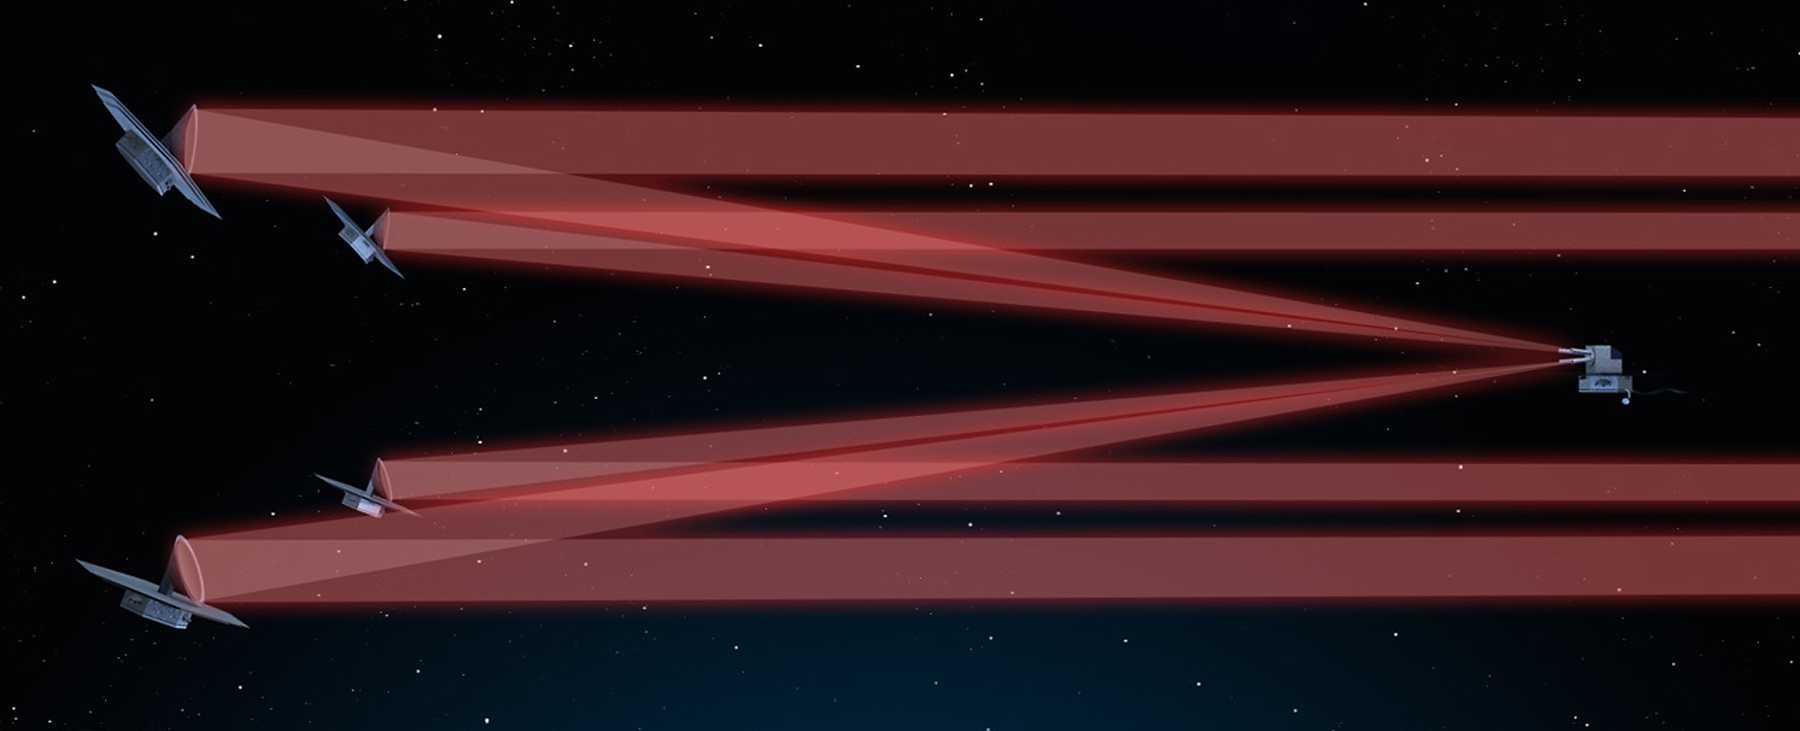 Fünf Satelliten welche durch rote Laserstrahlen miteinander verbunden sind.